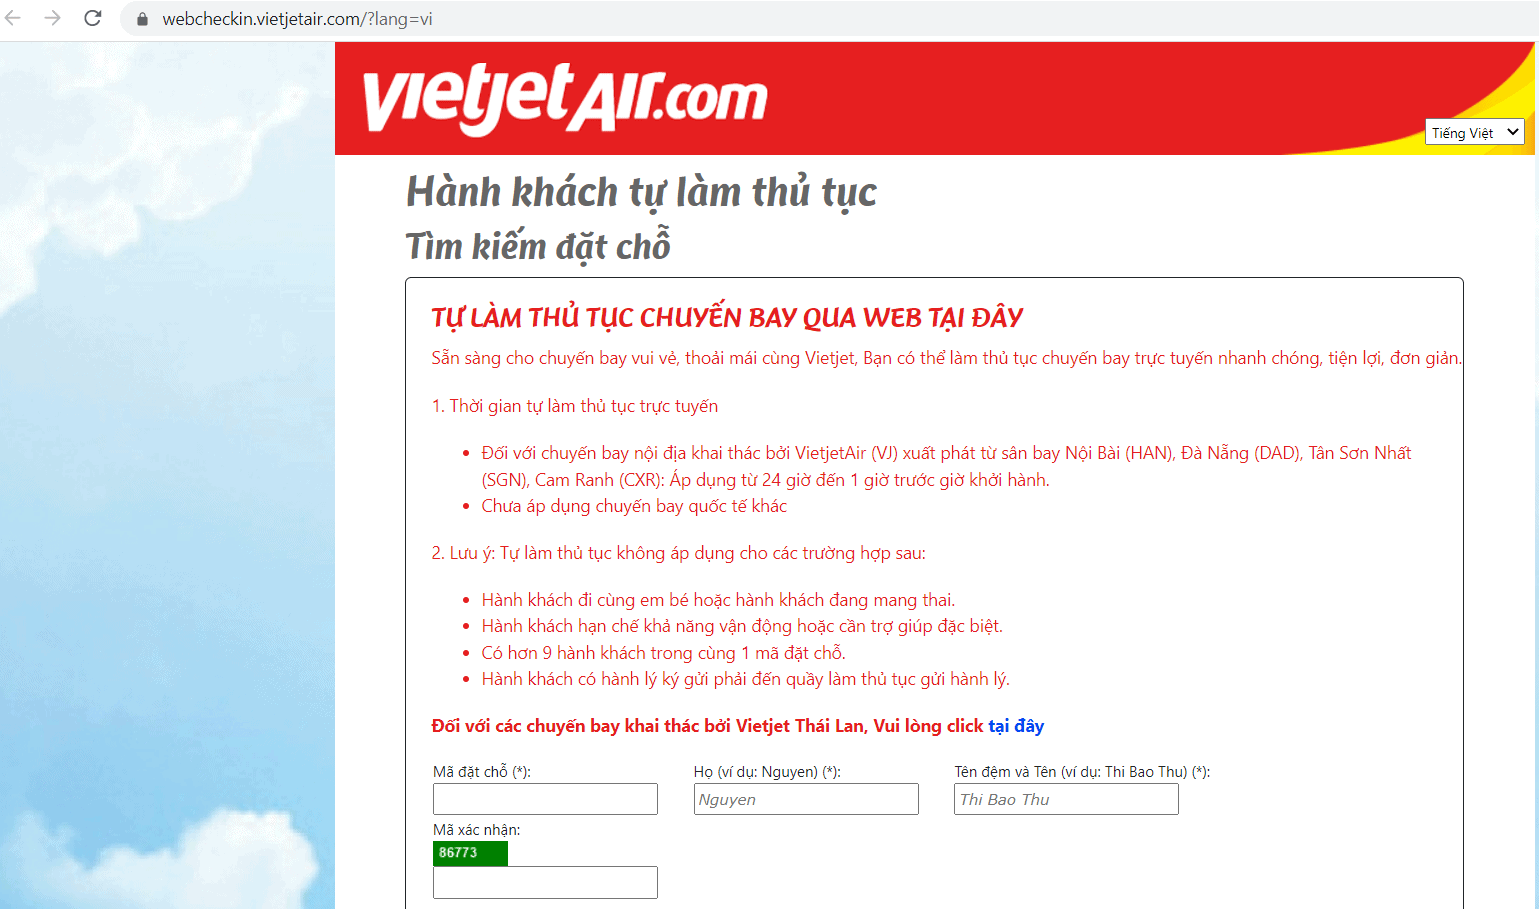 Check in online Vietjet Air - Điền thông tin